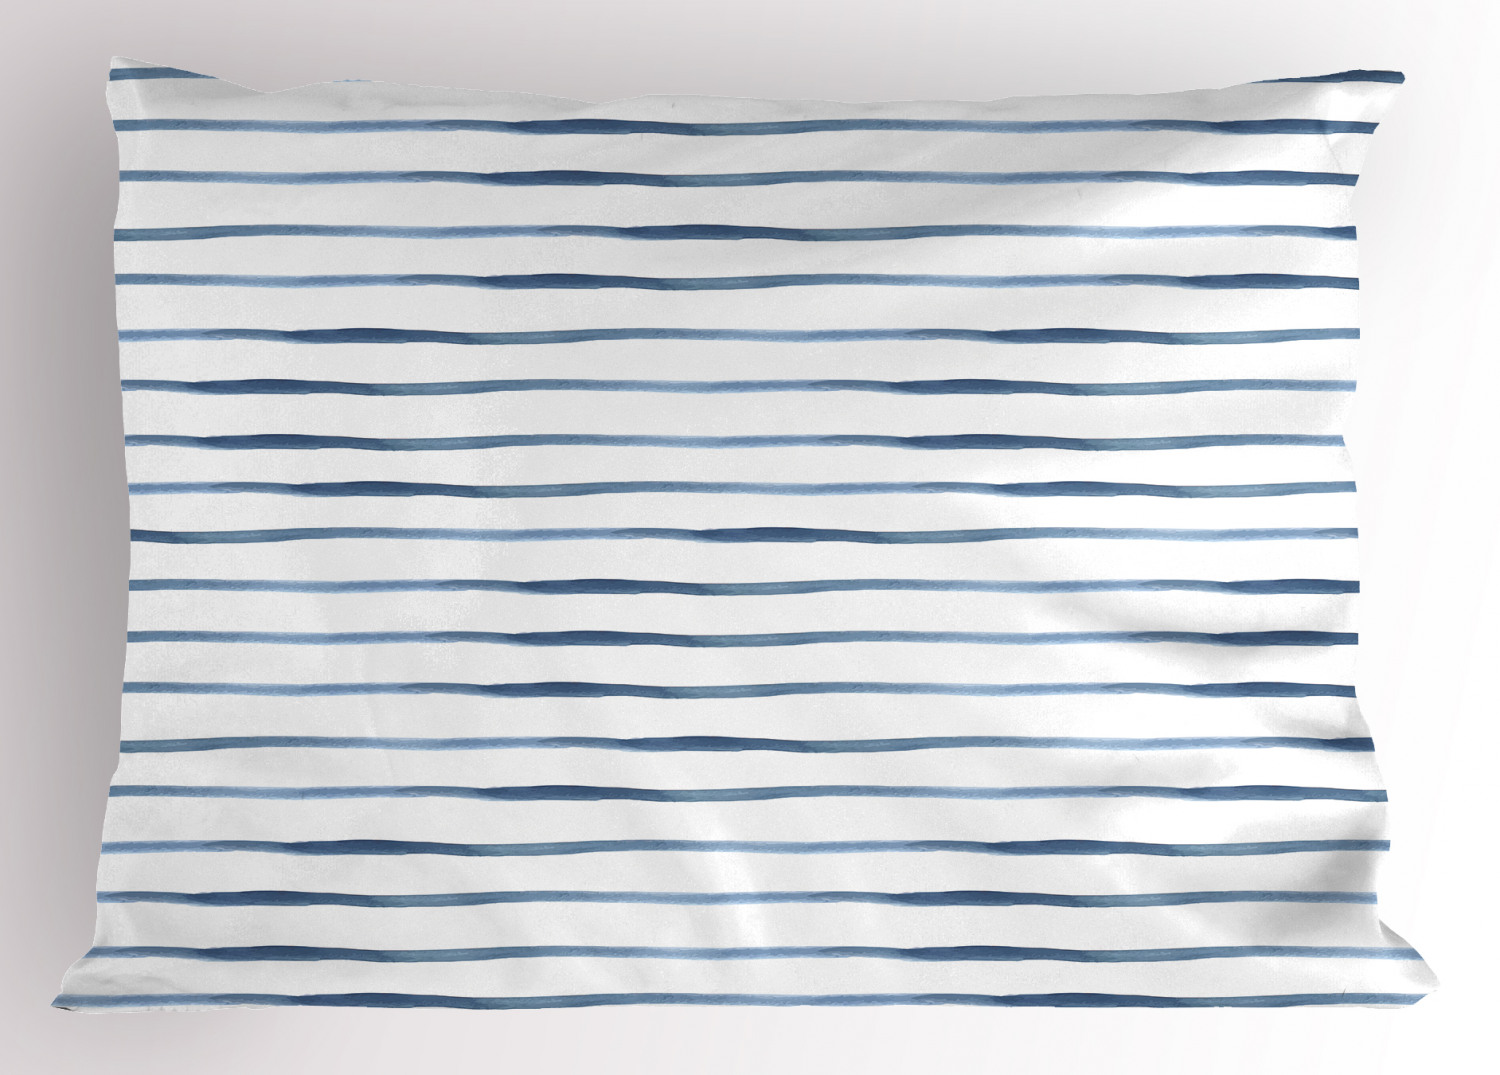 Details about   Harbour Stripe Pillow Sham Decorative Pillowcase 3 Sizes Bedroom Decor Ambesonne 